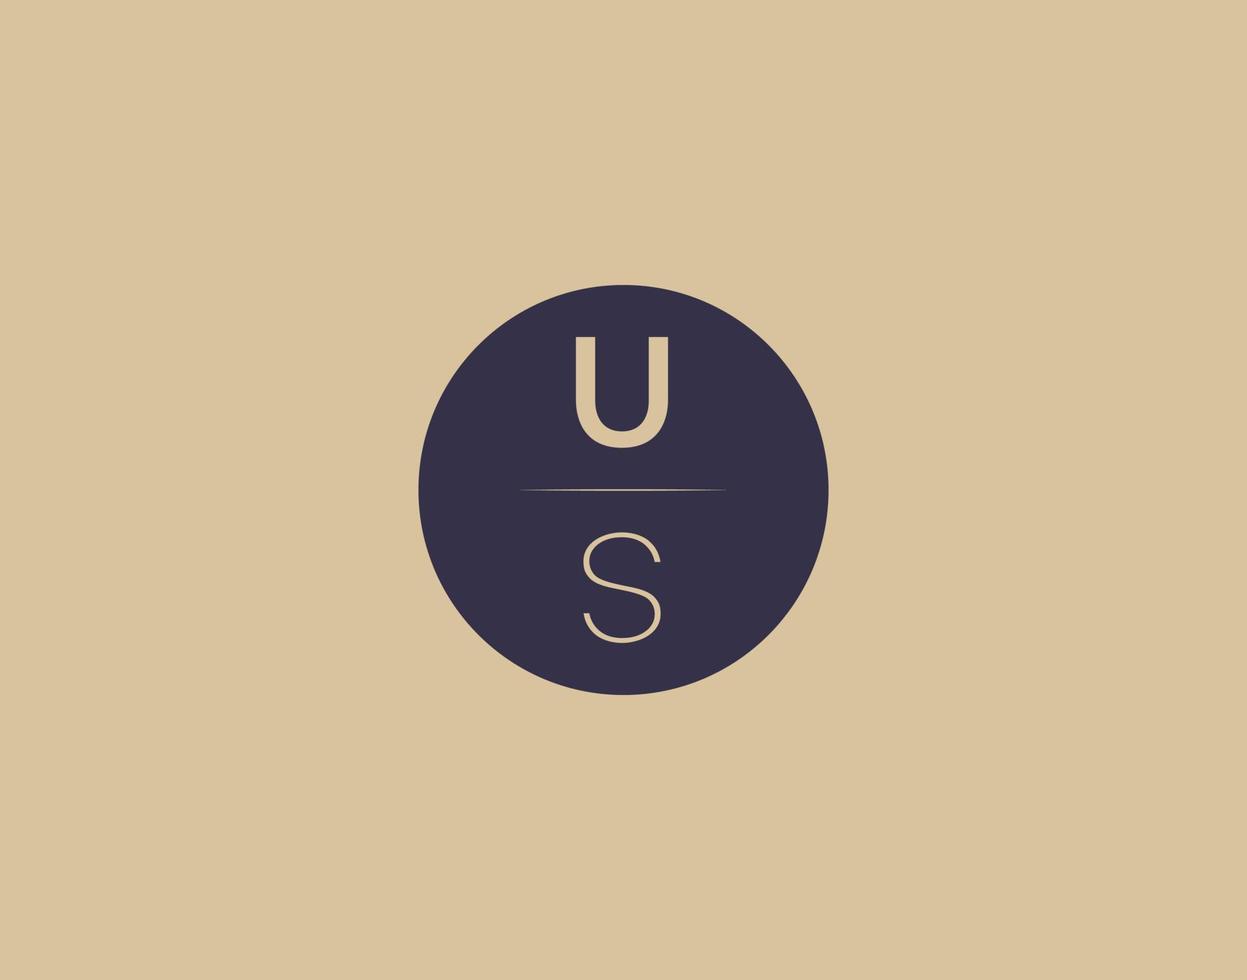 US letter modern elegant logo design vector images